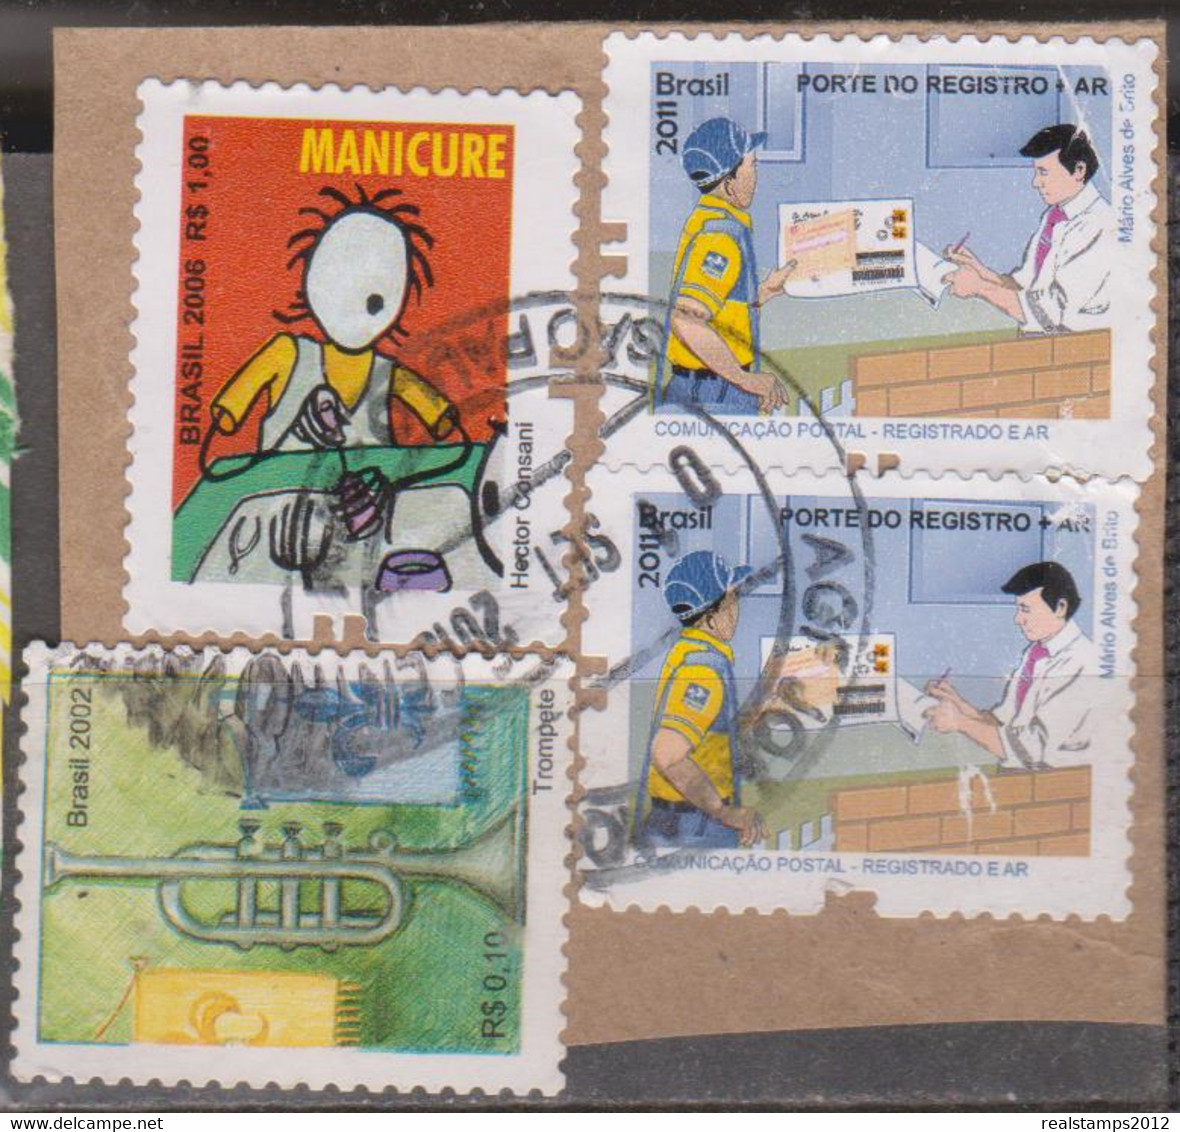 Brasil -2011 - Comunicação Postal-Registrado E Ar + Profissões + Série Inst.Musicais (S/ Sobscrito) (o)  RHM Nº - Used Stamps